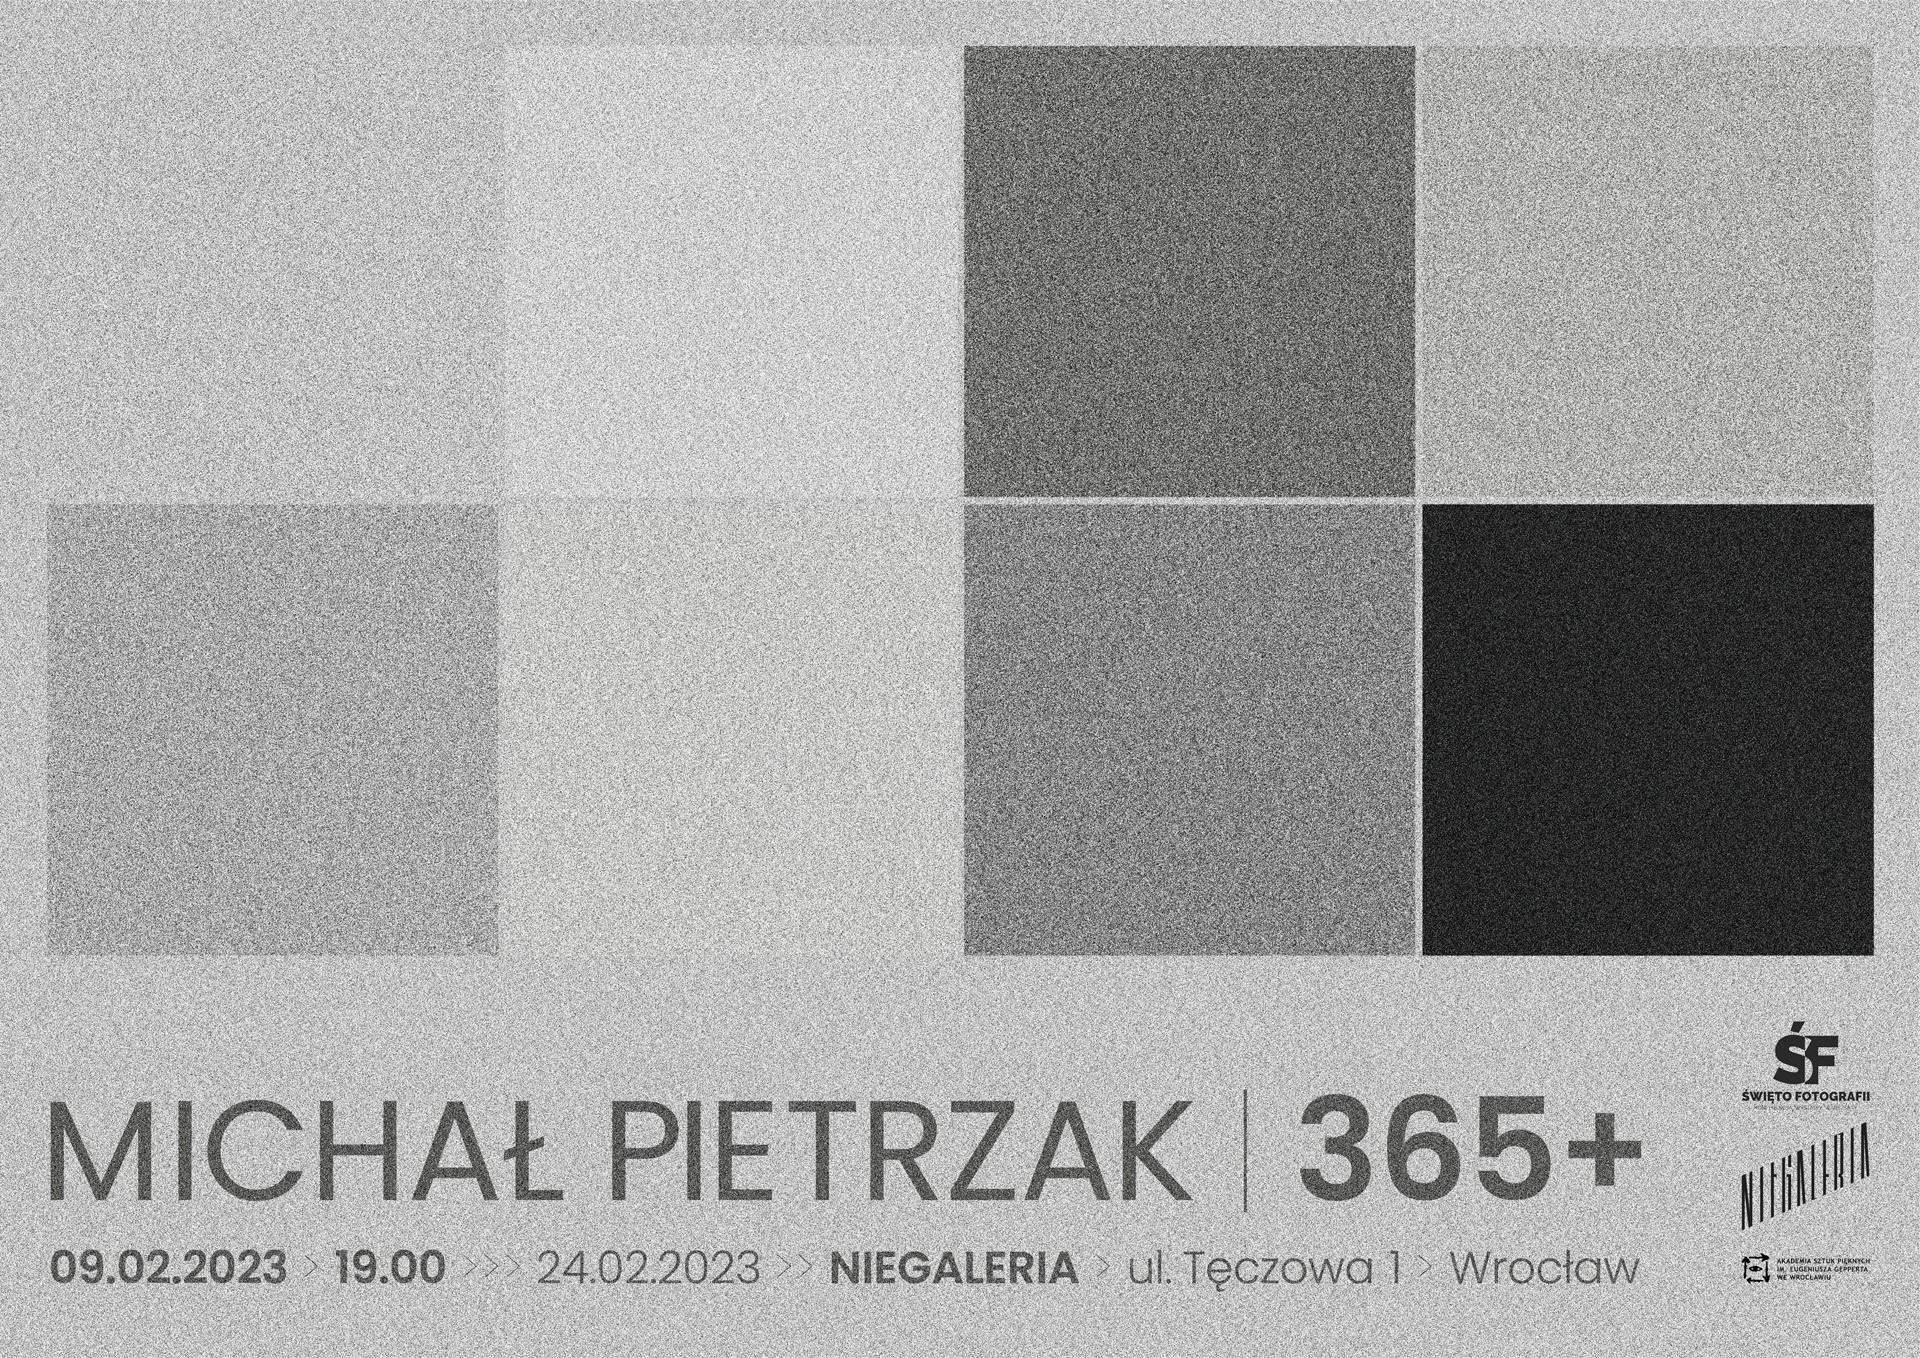 Micha Pietrzak 365+